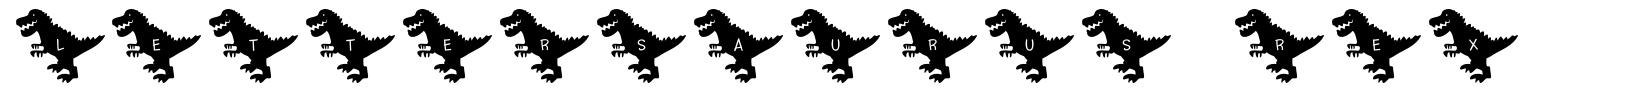 Lettersaurus Rex font